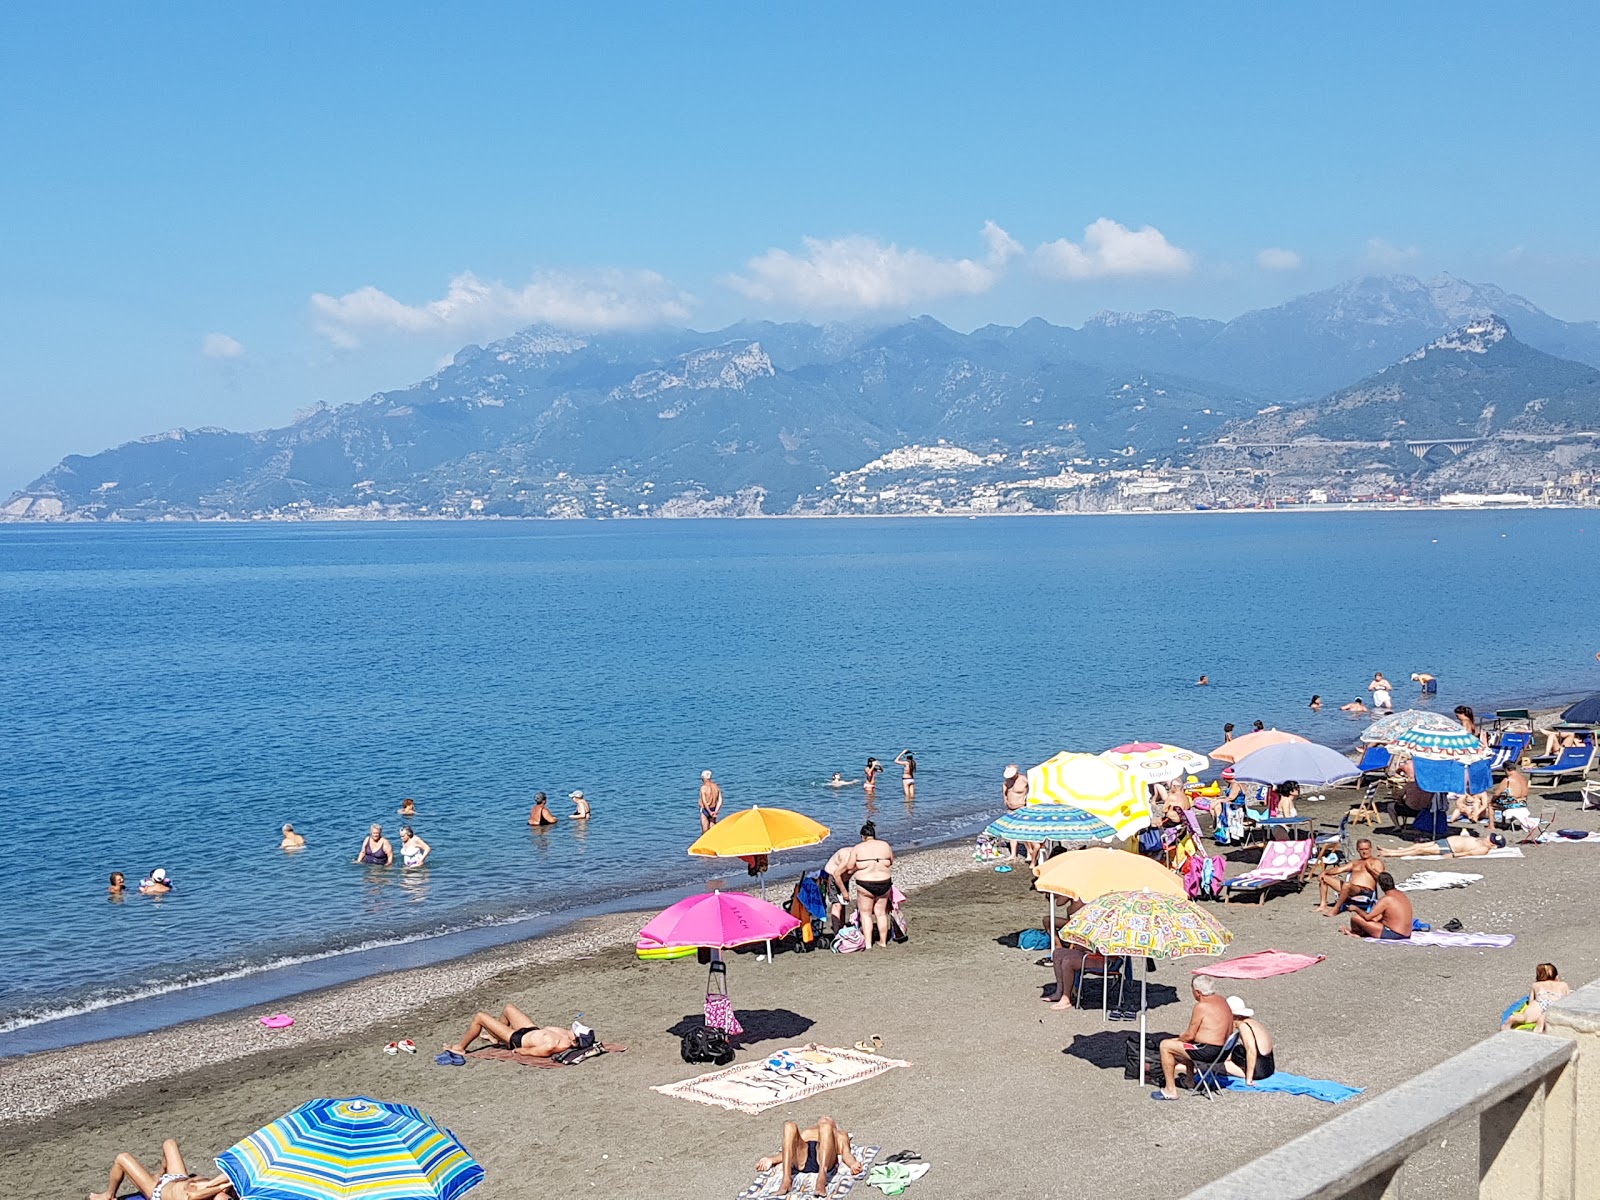 Salerno beach II'in fotoğrafı geniş plaj ile birlikte